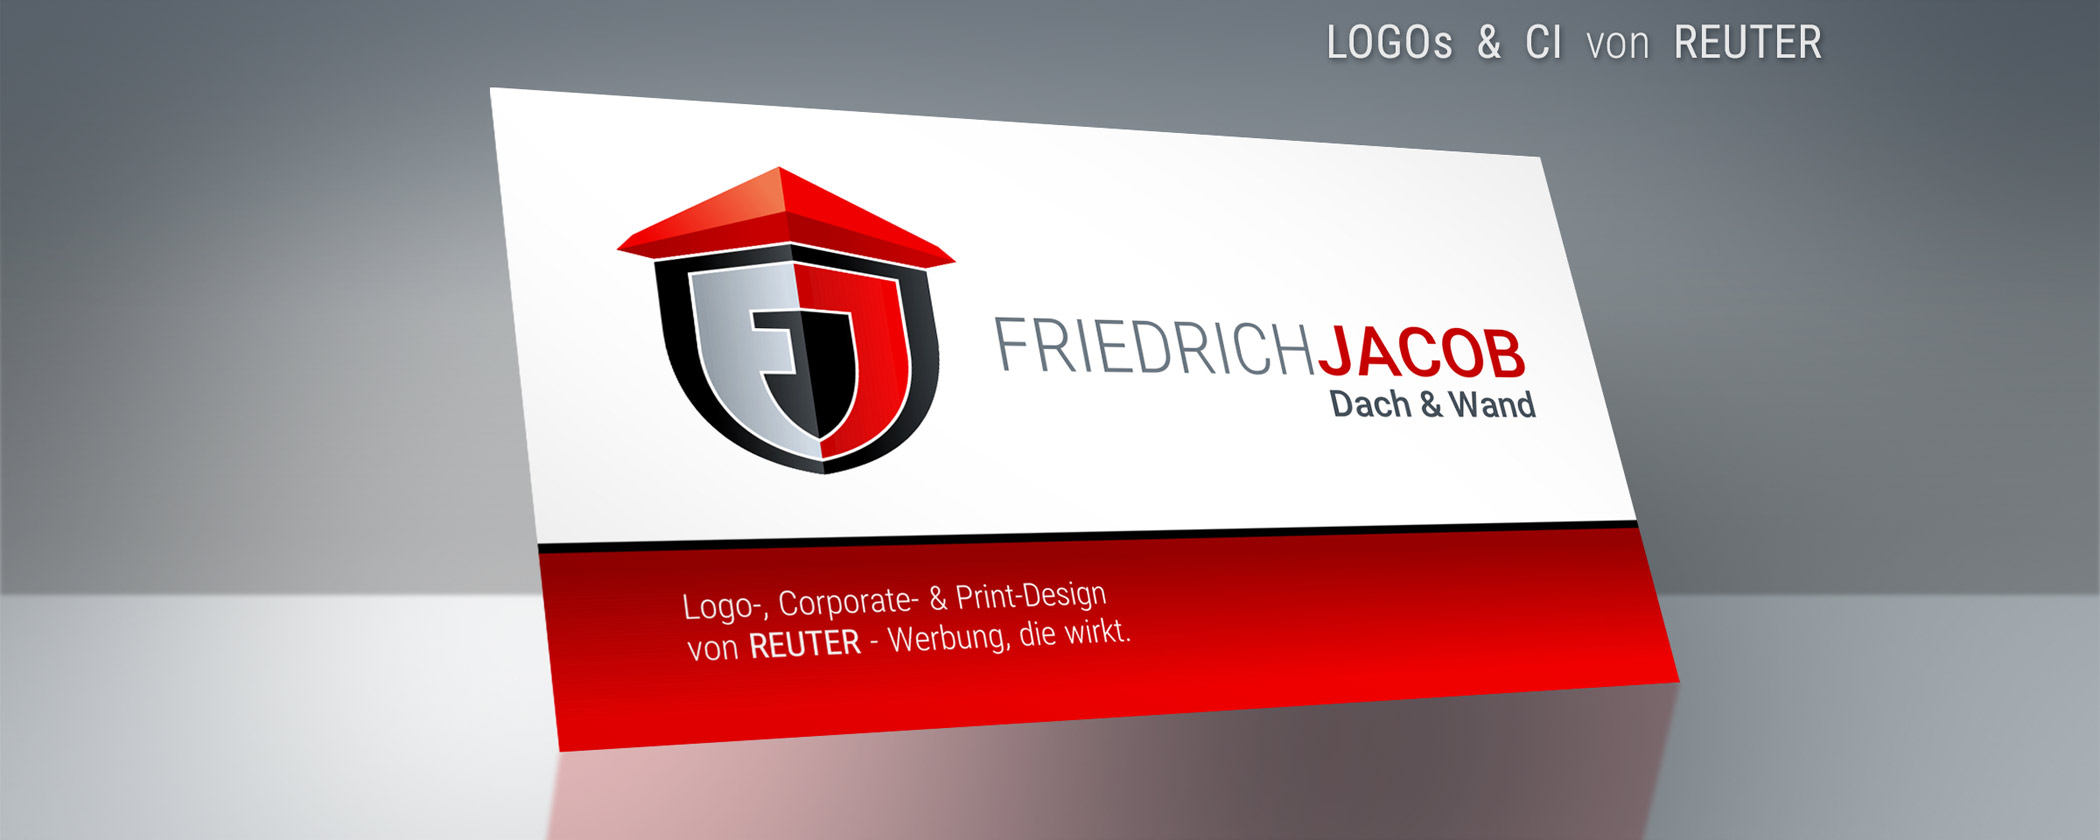 Grafik: LOGO & CORPORATE DESIGN - Beispiel Visitenkarte Jacob Dach & Wand von REUTER - Werbung, die wirkt.